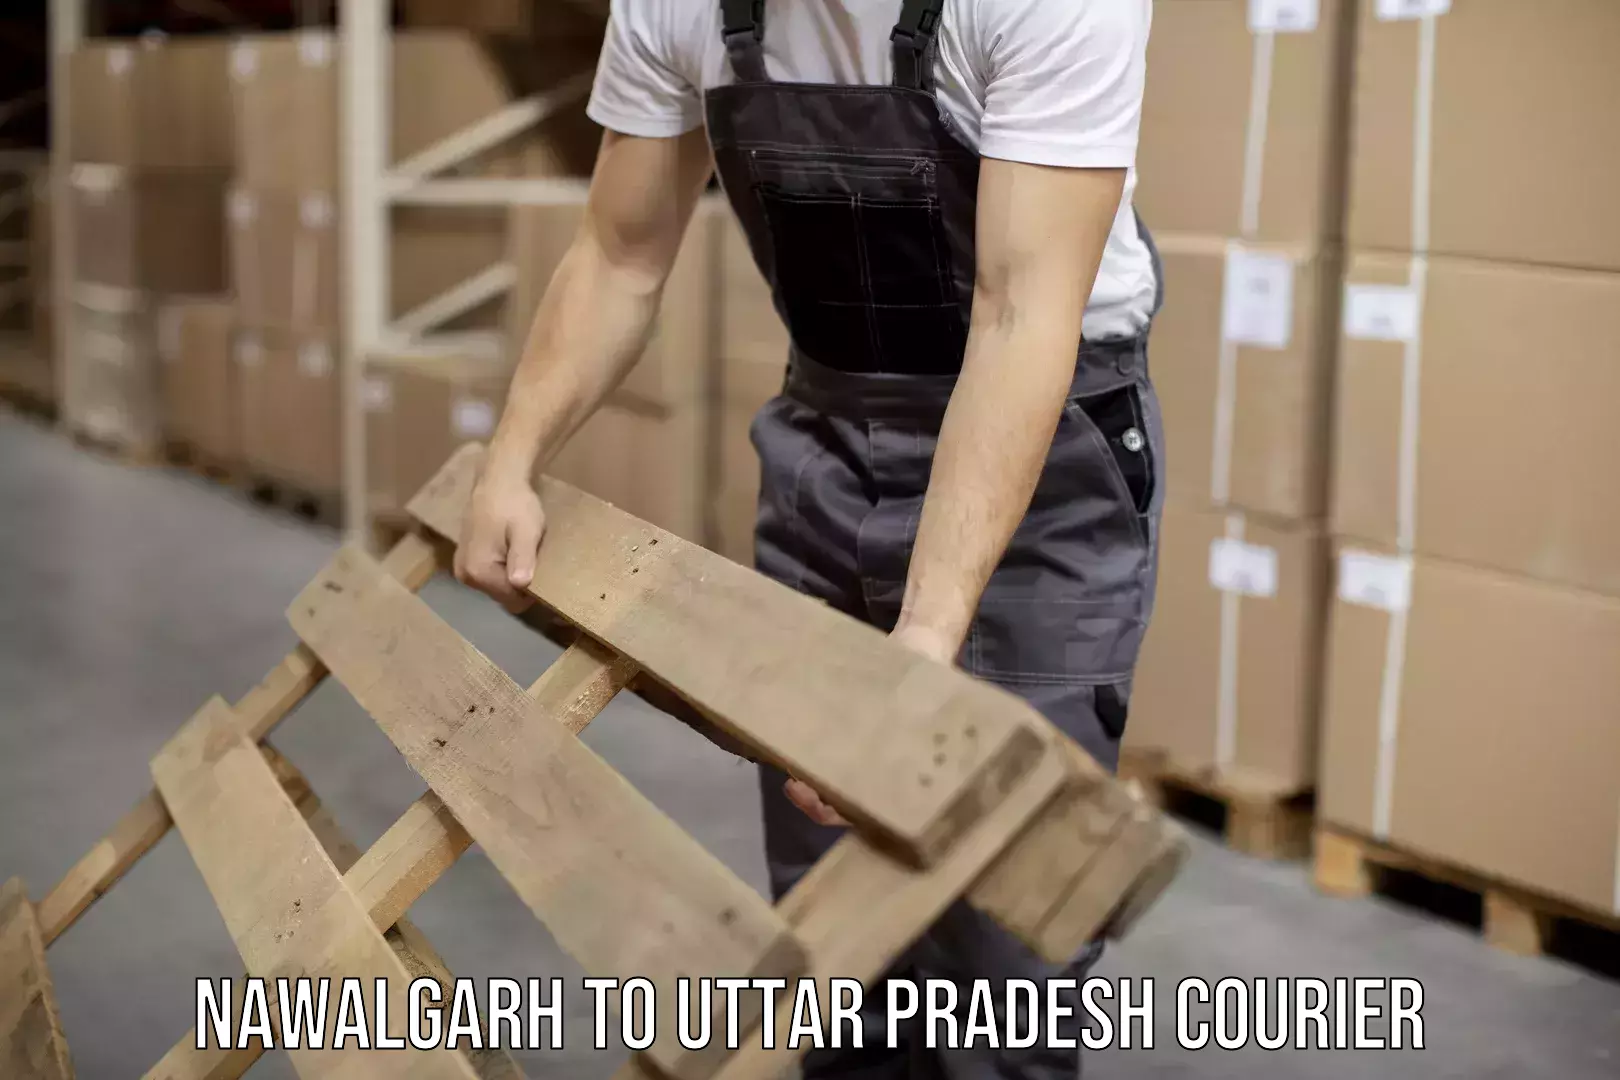 Multi-city courier Nawalgarh to Varanasi